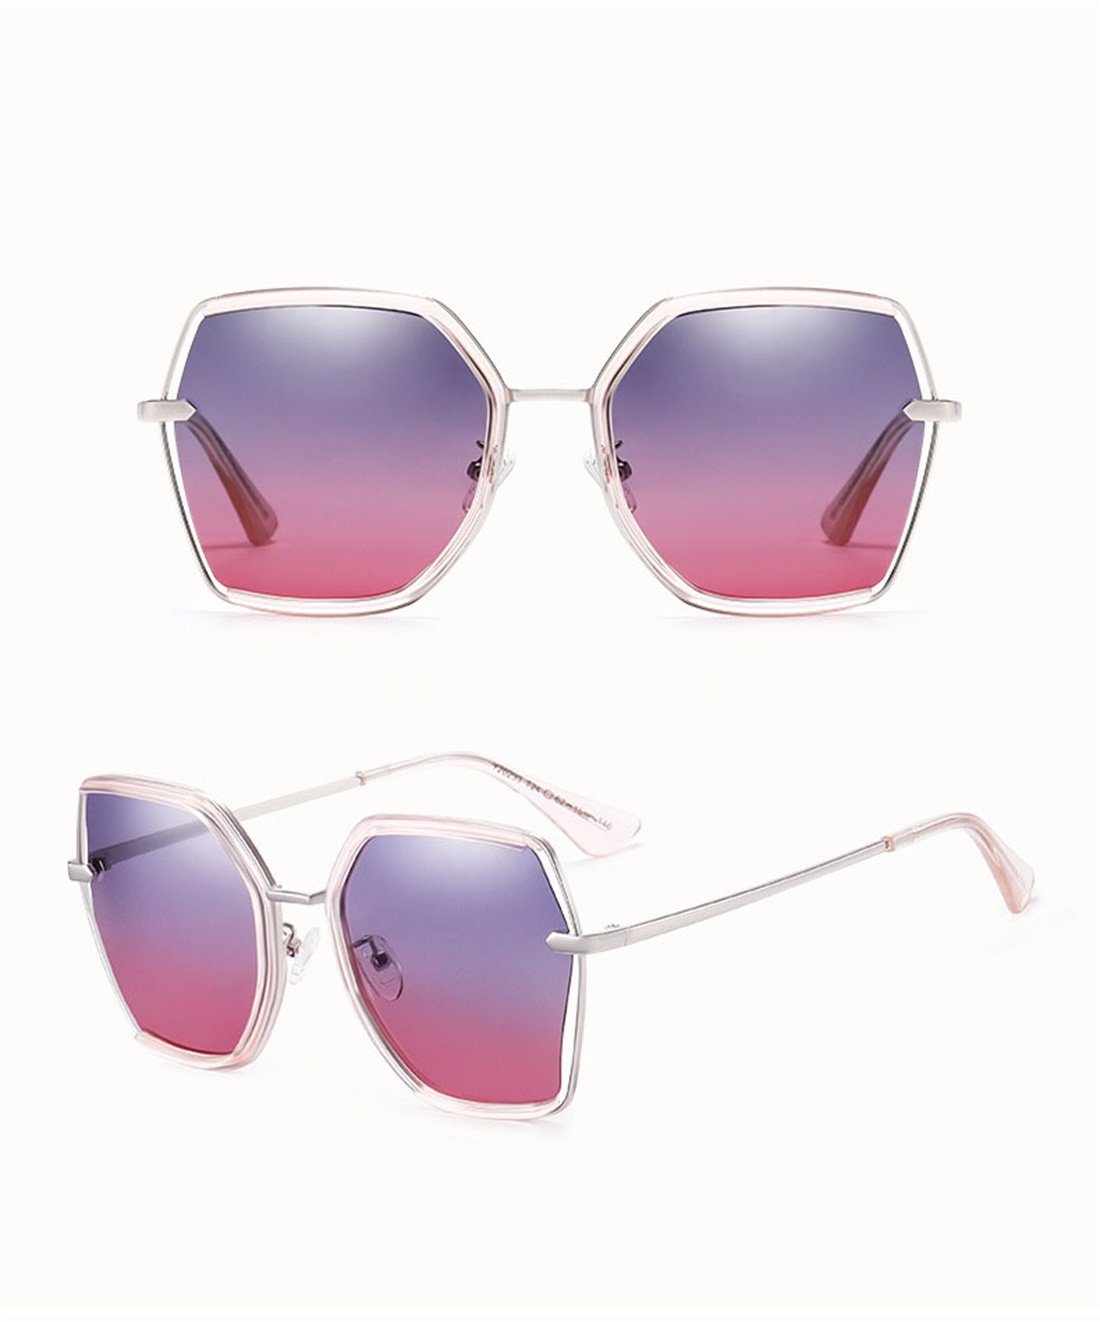 DÖRÖY Sonnenbrille Damen Mode Sonnenbrille, blau Box polarisierte Sonnenschirme Sonnenbrille